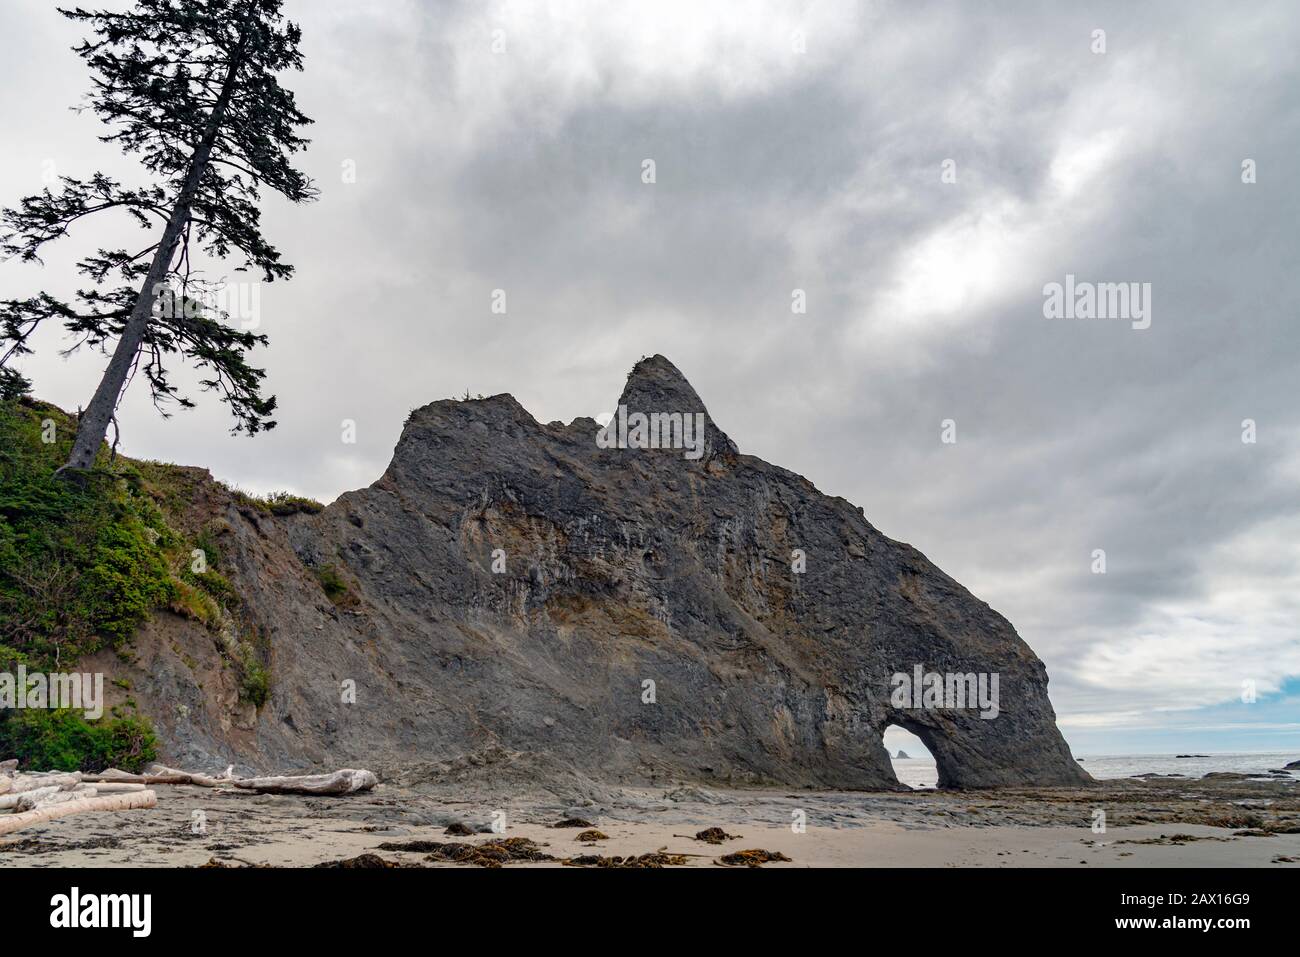 formacion-de-rocas-gigantes-dormidos-en-la-costa-con-un-gran-pino-2ax16g9.jpg